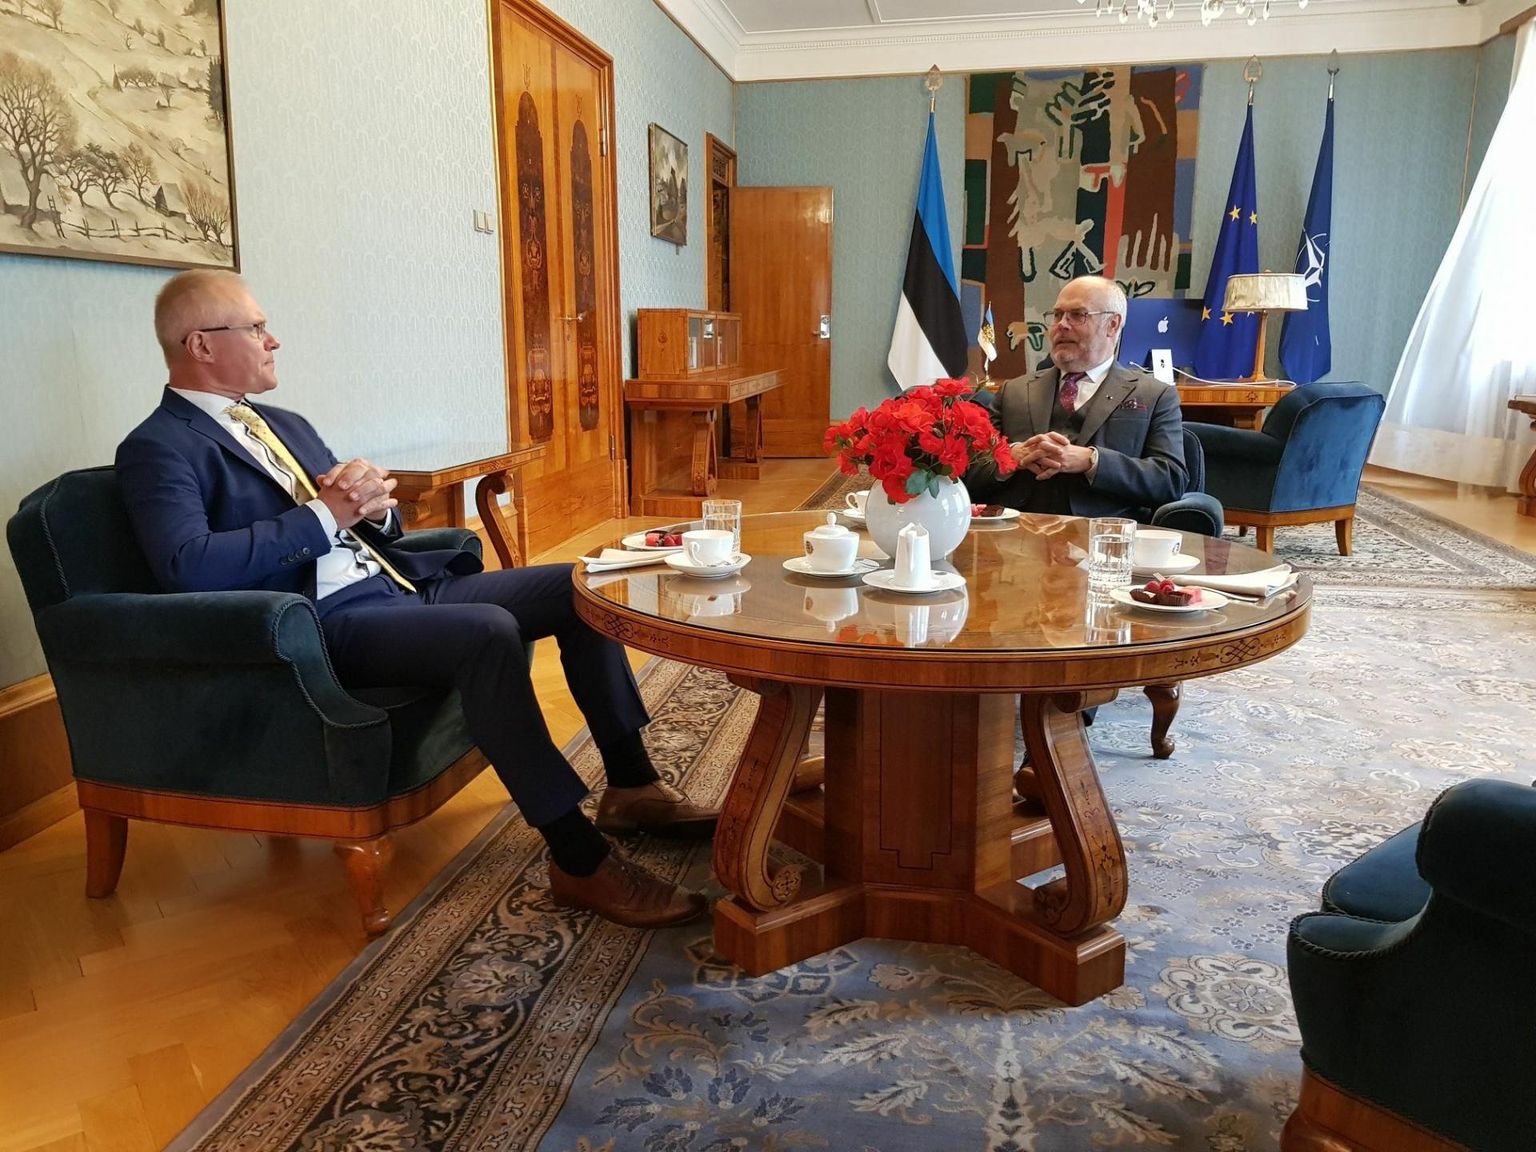 President Alar Karisega kohtudes käidi koos üle olulisemad teemad, mis puudutavad Eesti Vabariigi suhteid ja suhete väljavaateid Mongoolia, Vietnami, Tai ja Hiinaga.